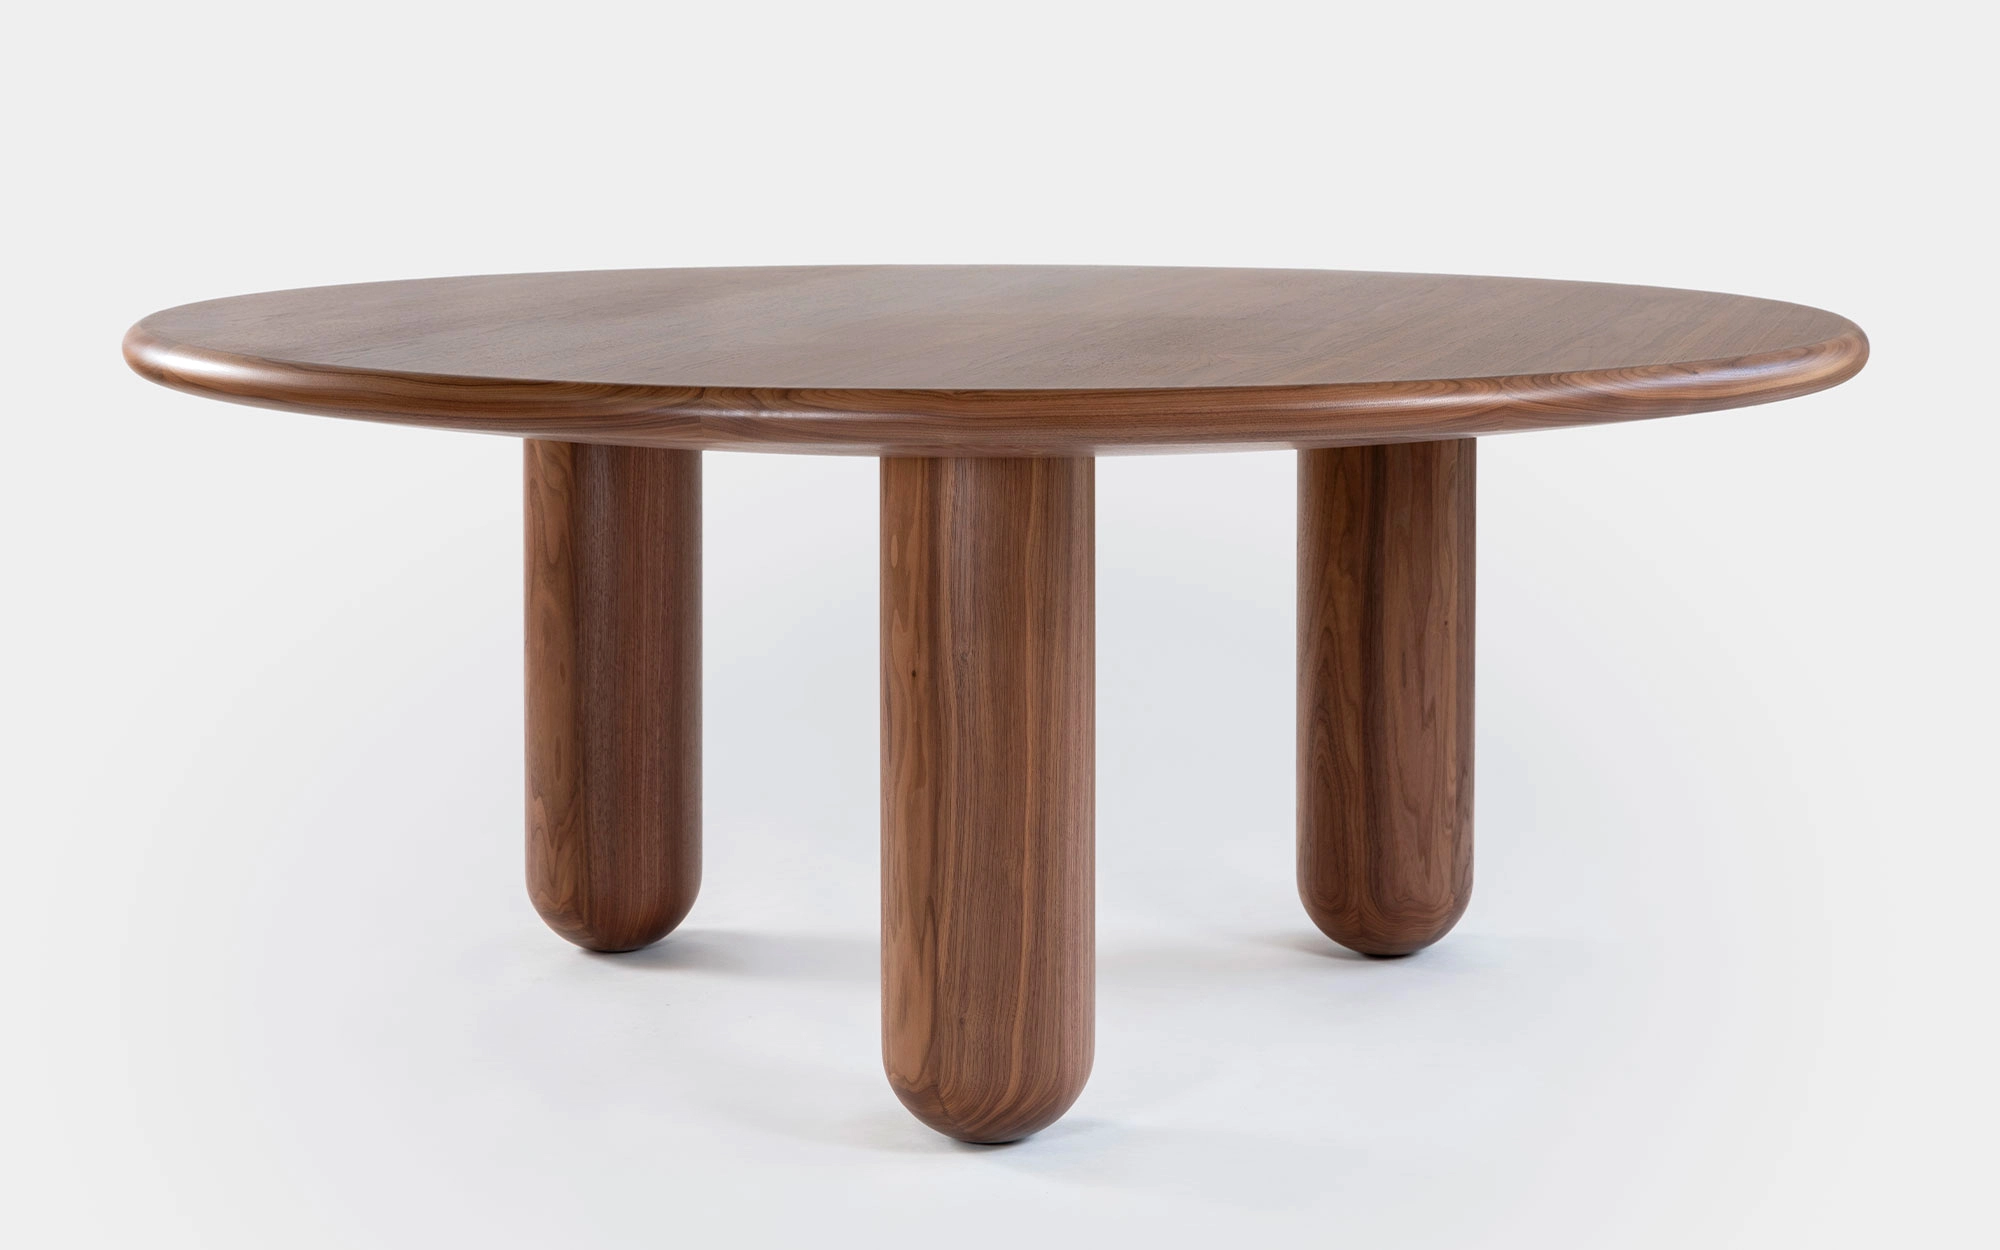 Organism table - Jaime Hayon - Vase - Galerie kreo